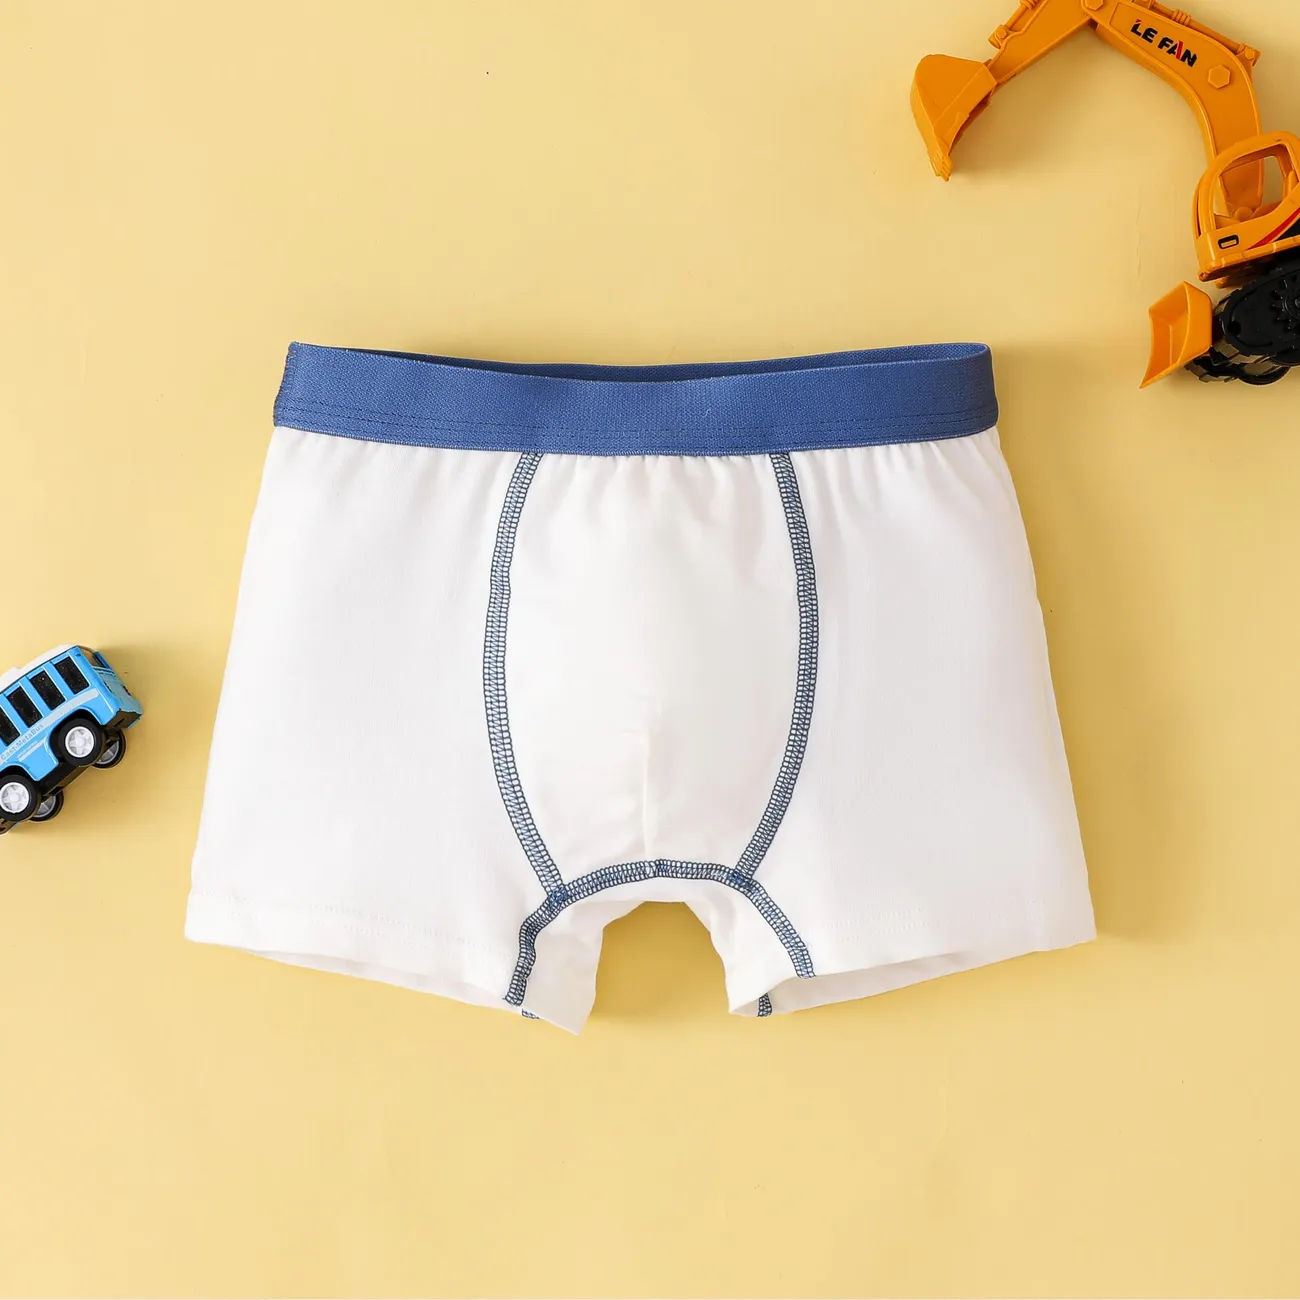 Veículo temático Cotton Underwear para Meninos - 1 Piece Tight Set Azul big image 1